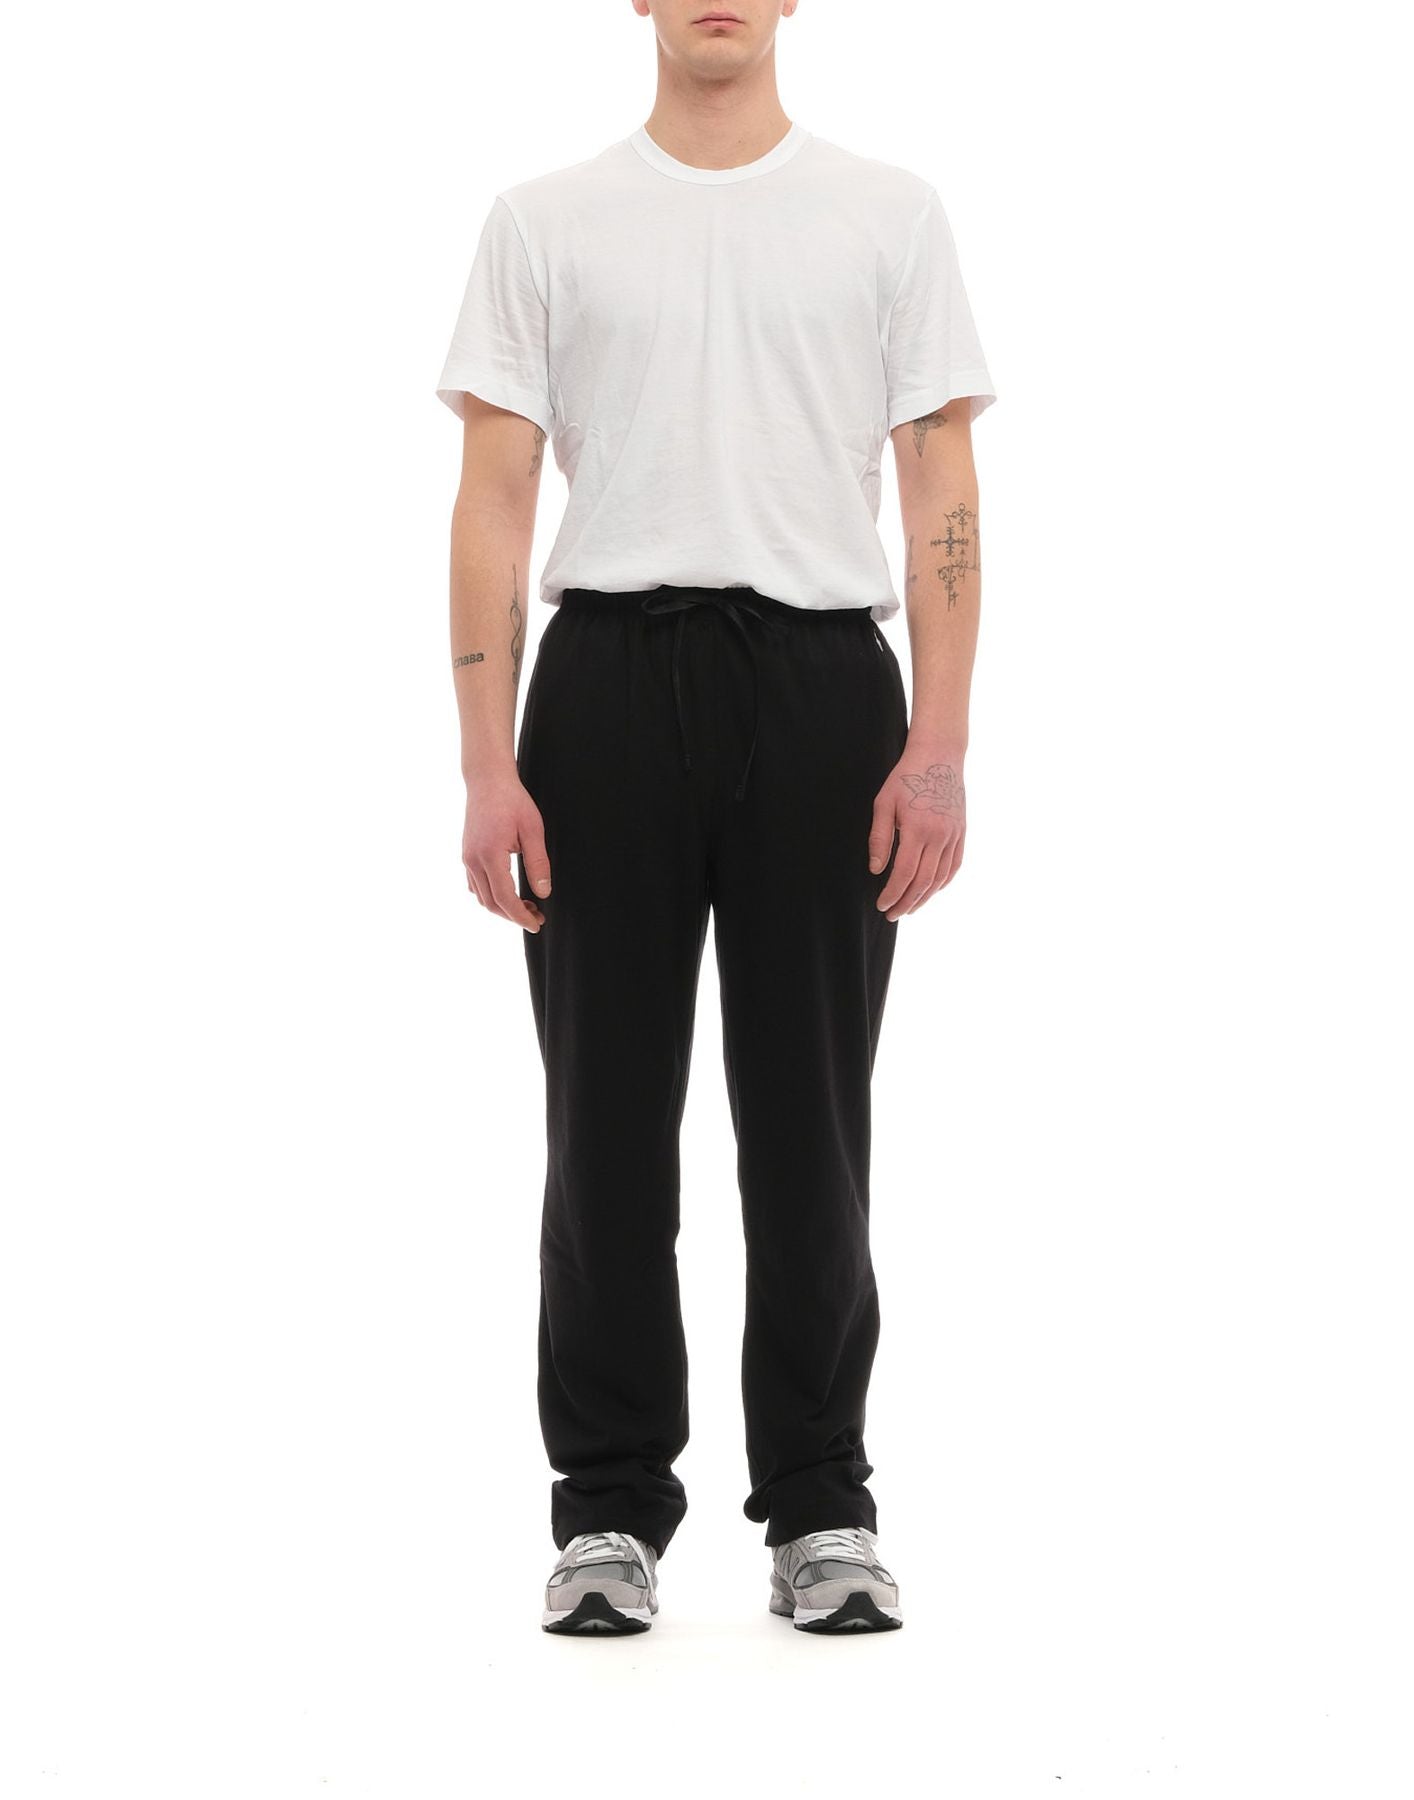 Pantalones de chándal para hombre 714844762001 Negro Polo Ralph Lauren